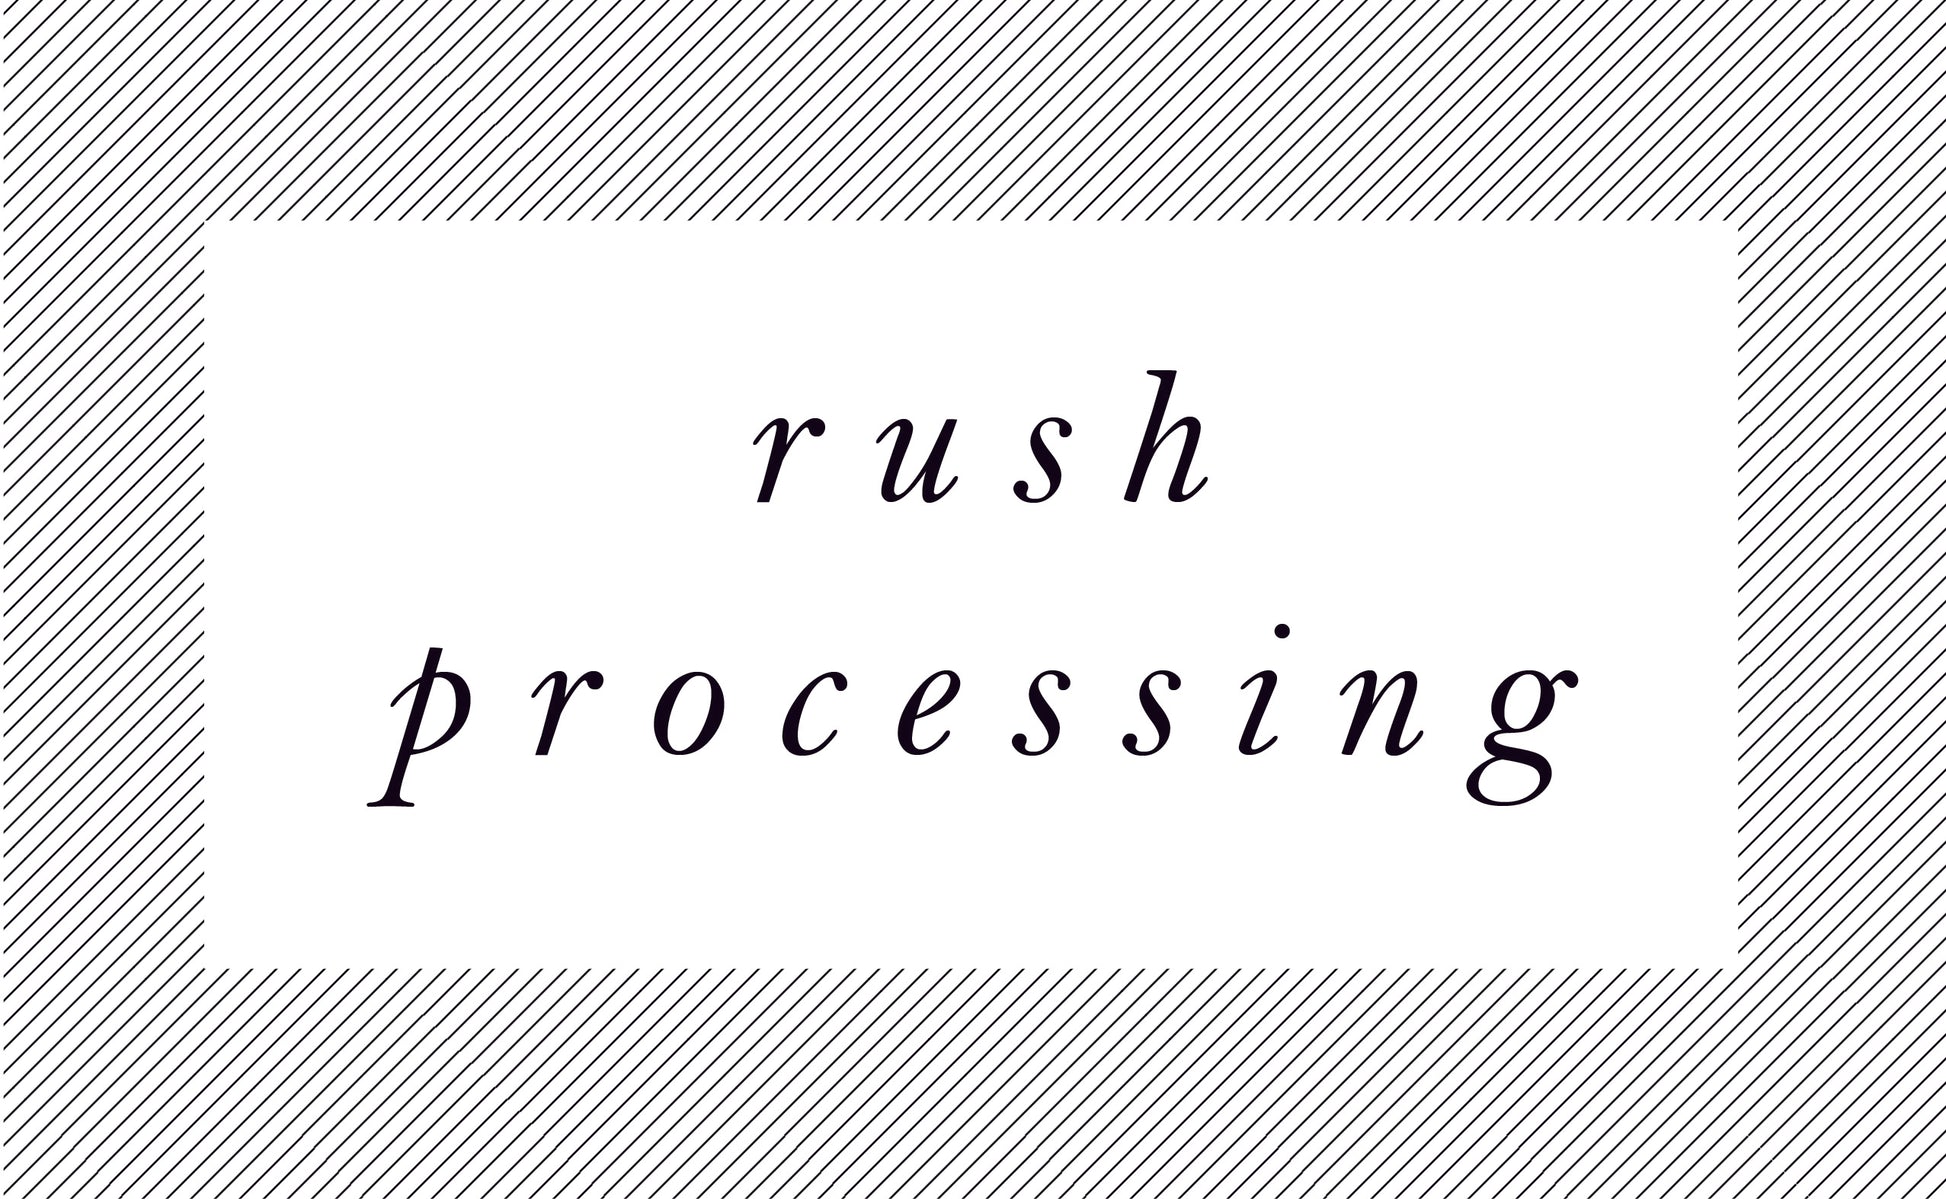 Rush Processing - Studio Portmanteau